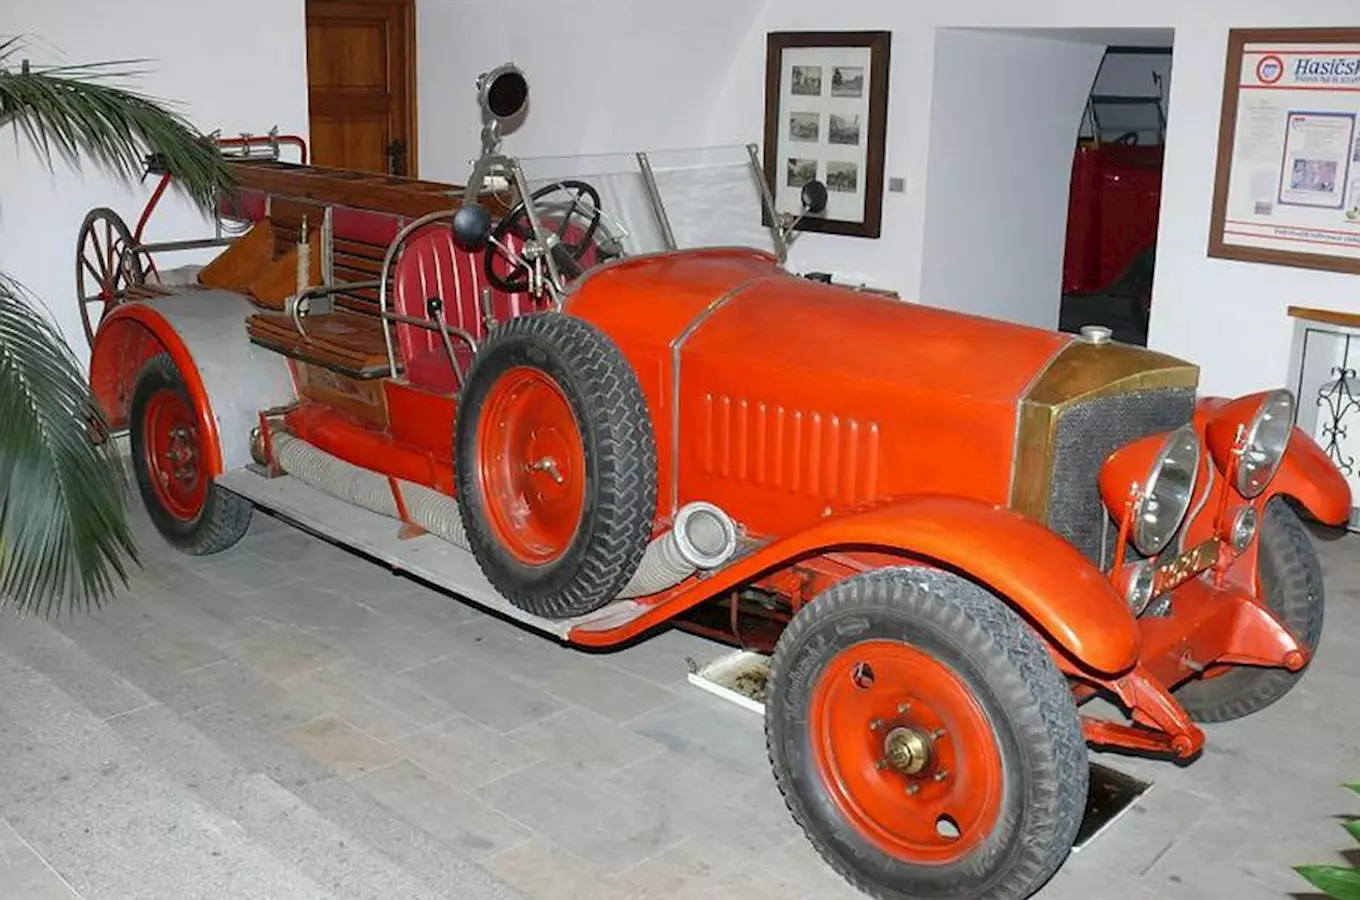 Zámek Přibyslav – rozsáhlé sbírky hasičského muzea